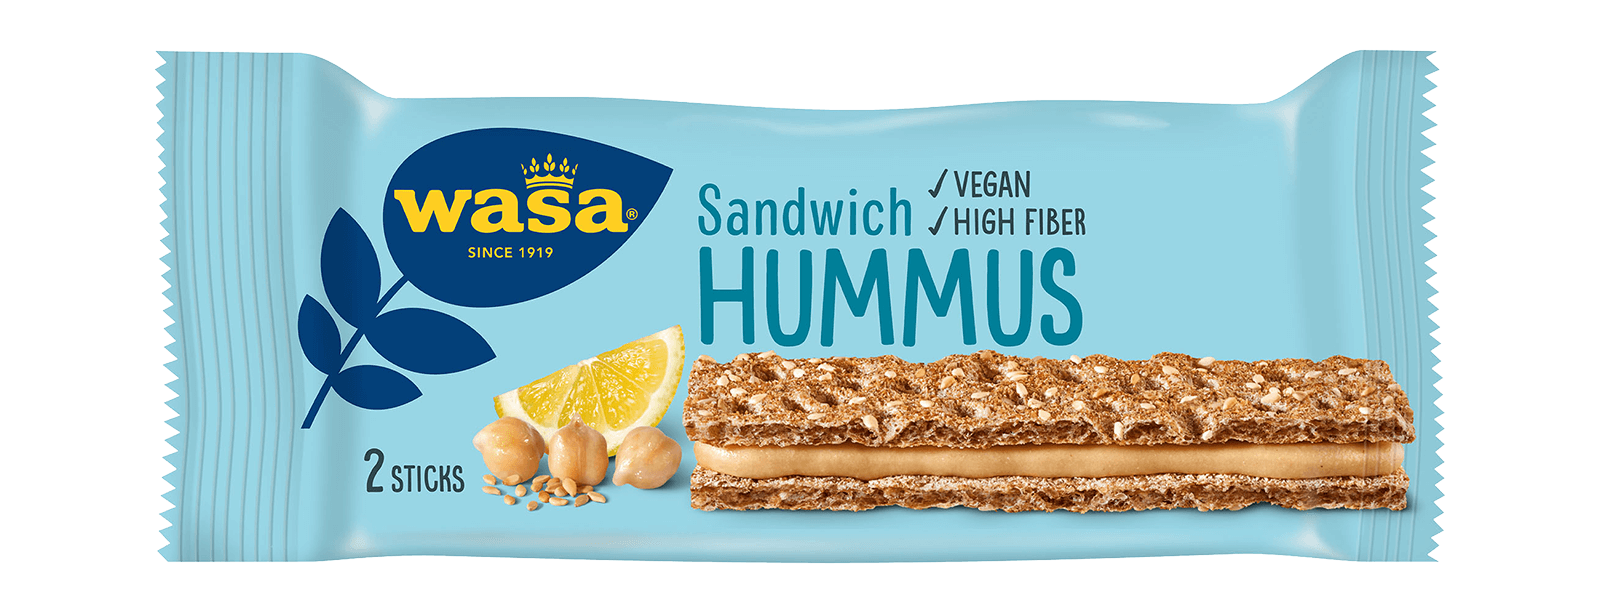 Sandwich Hummus